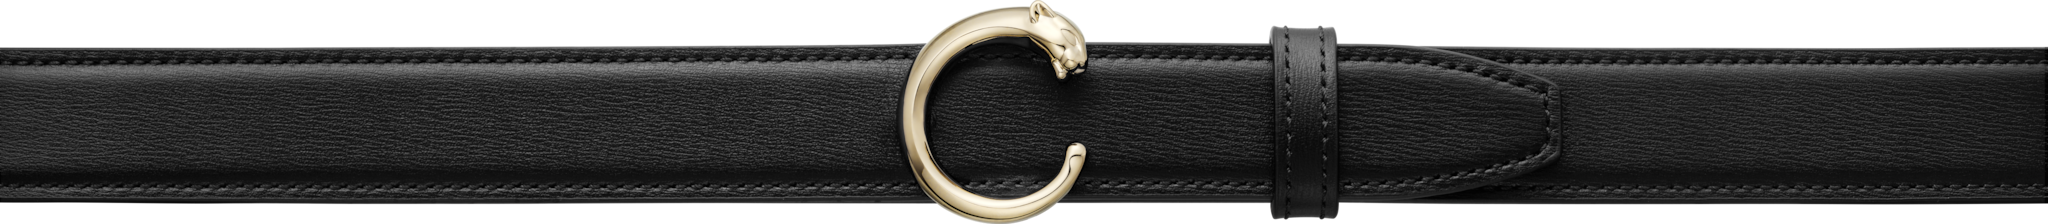 Panthère de Cartier beltBlack cowhide, golden-finish buckle